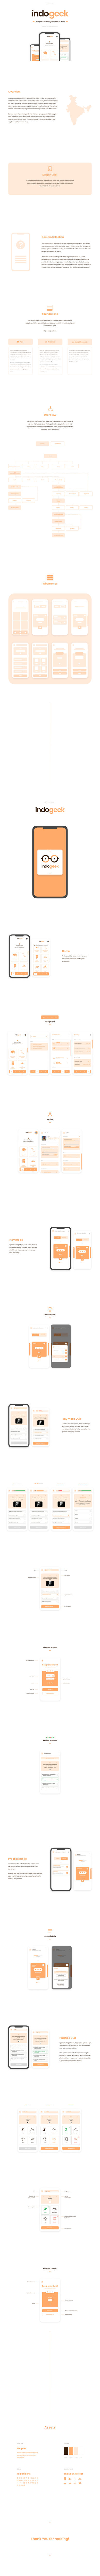 Figma game illustator India iphone Mobile app orange Quiz UI ux